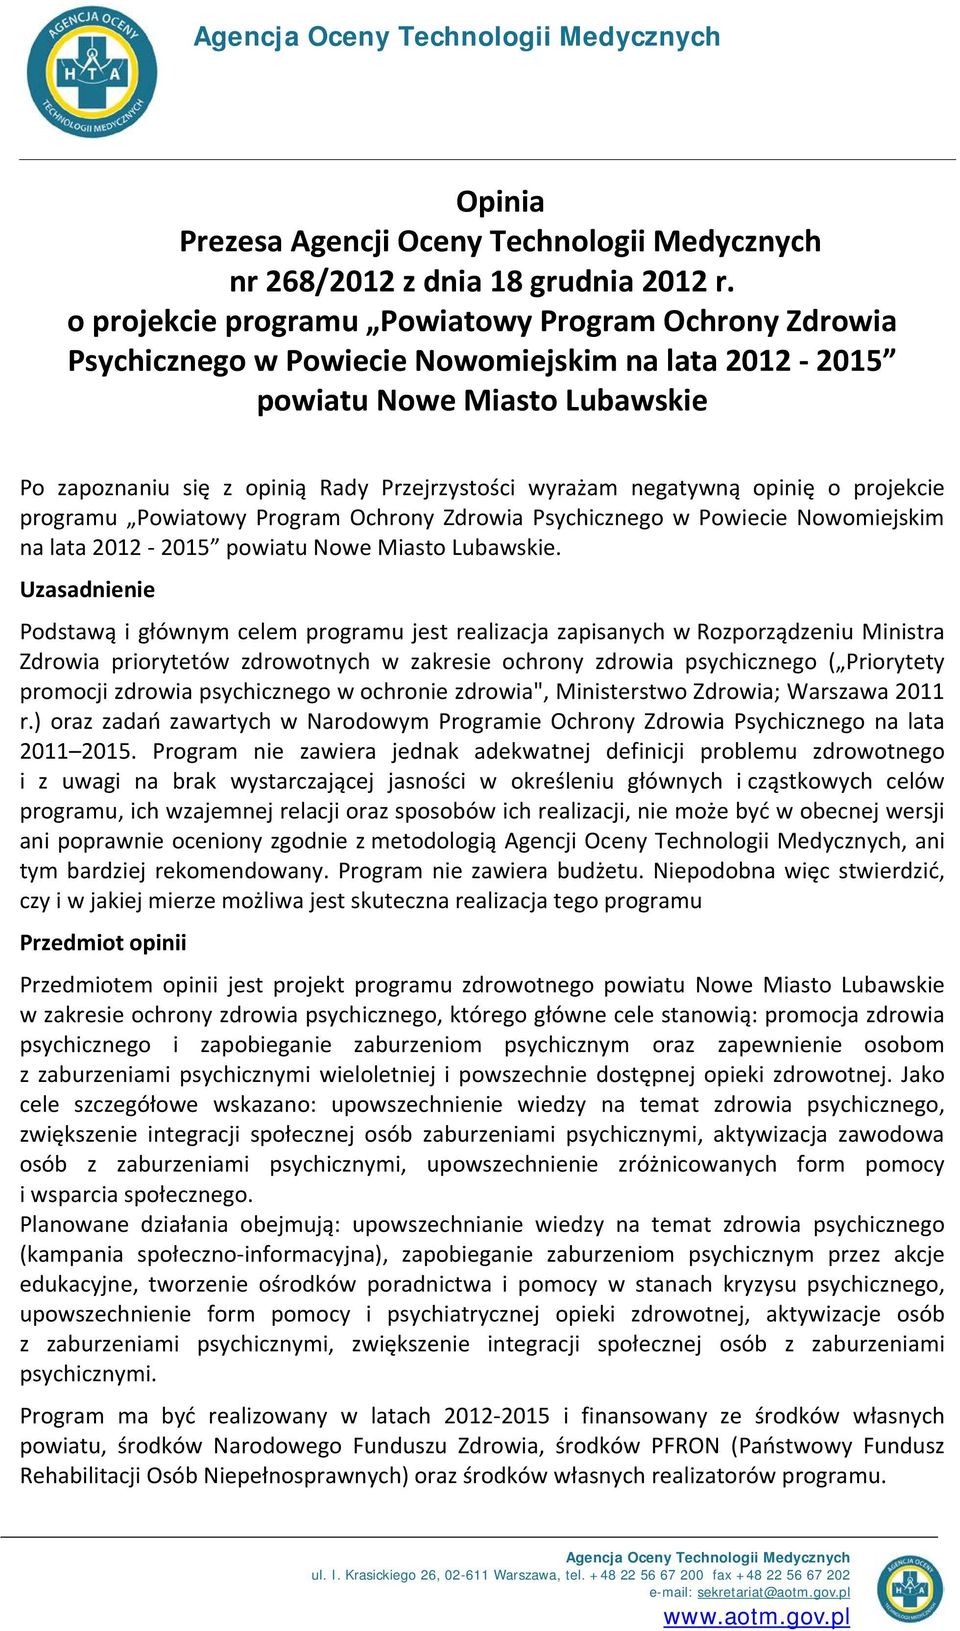 negatywną opinię o projekcie programu Powiatowy Program Ochrony Zdrowia Psychicznego w Powiecie Nowomiejskim na lata 2012-2015 powiatu Nowe Miasto Lubawskie.